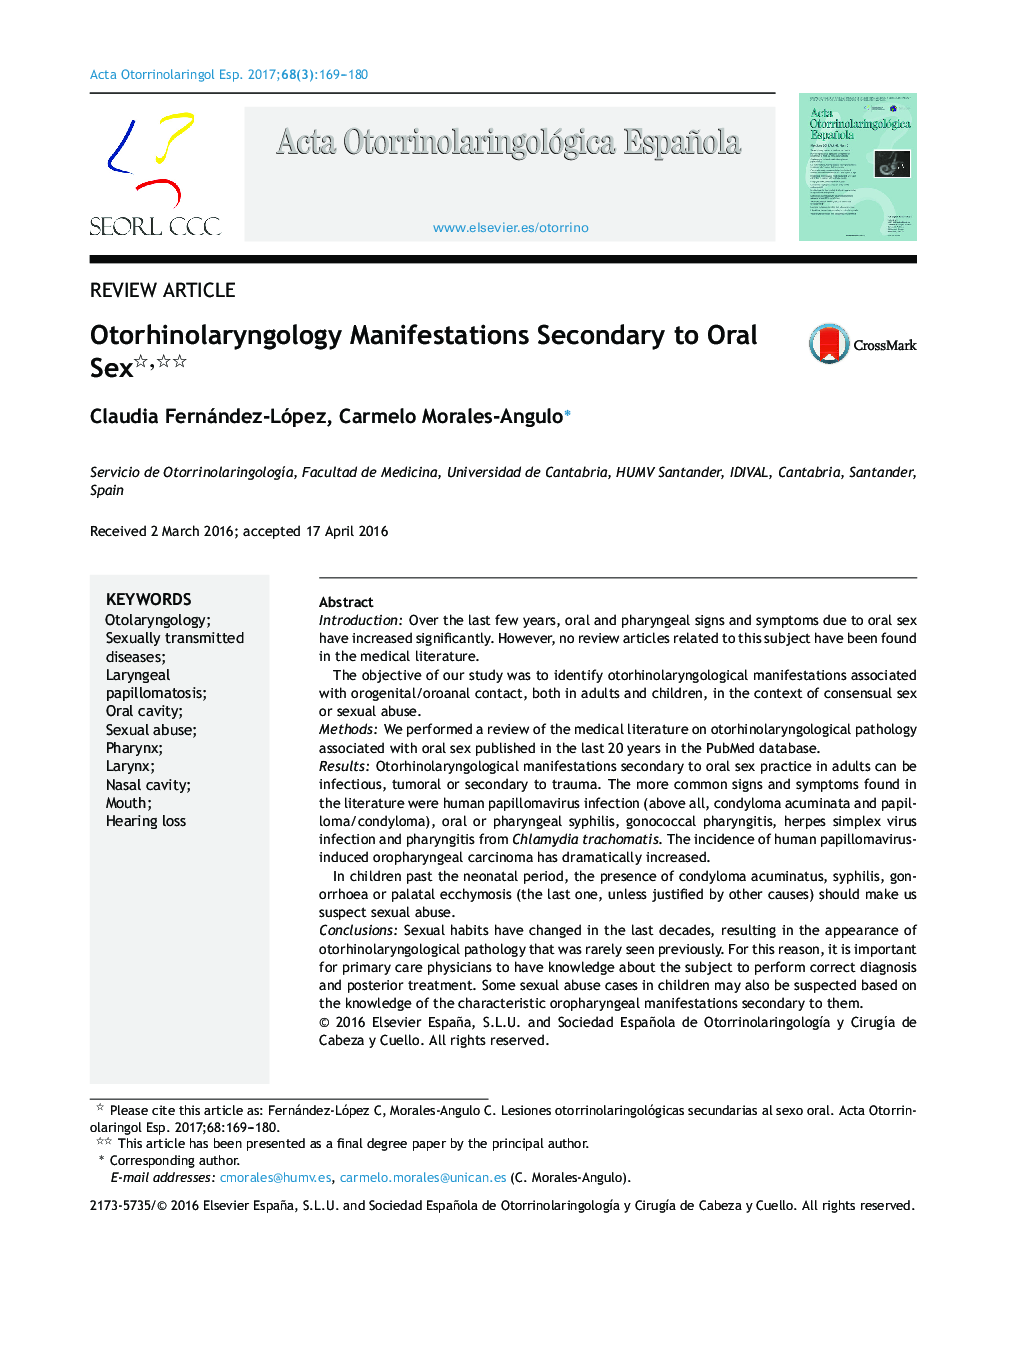 Otorhinolaryngology Manifestations Secondary to Oral Sex